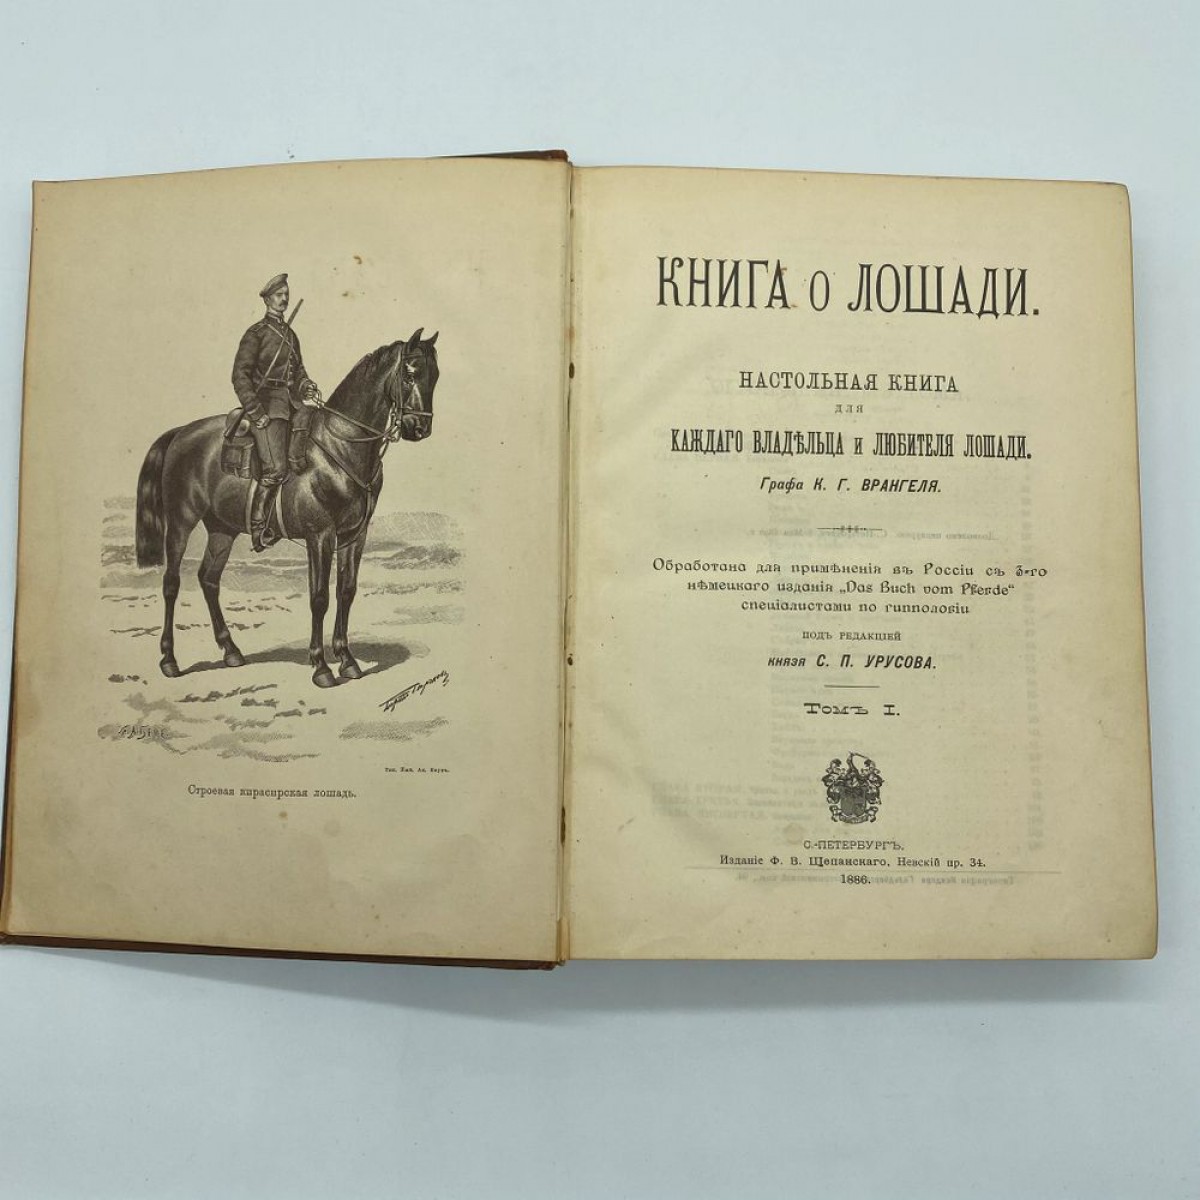 Купить книгу лошади. Книга о лошади Врангель. Князь Урусов книга о лошади. Книга породы лошадей. Книги про лошадей Художественные.